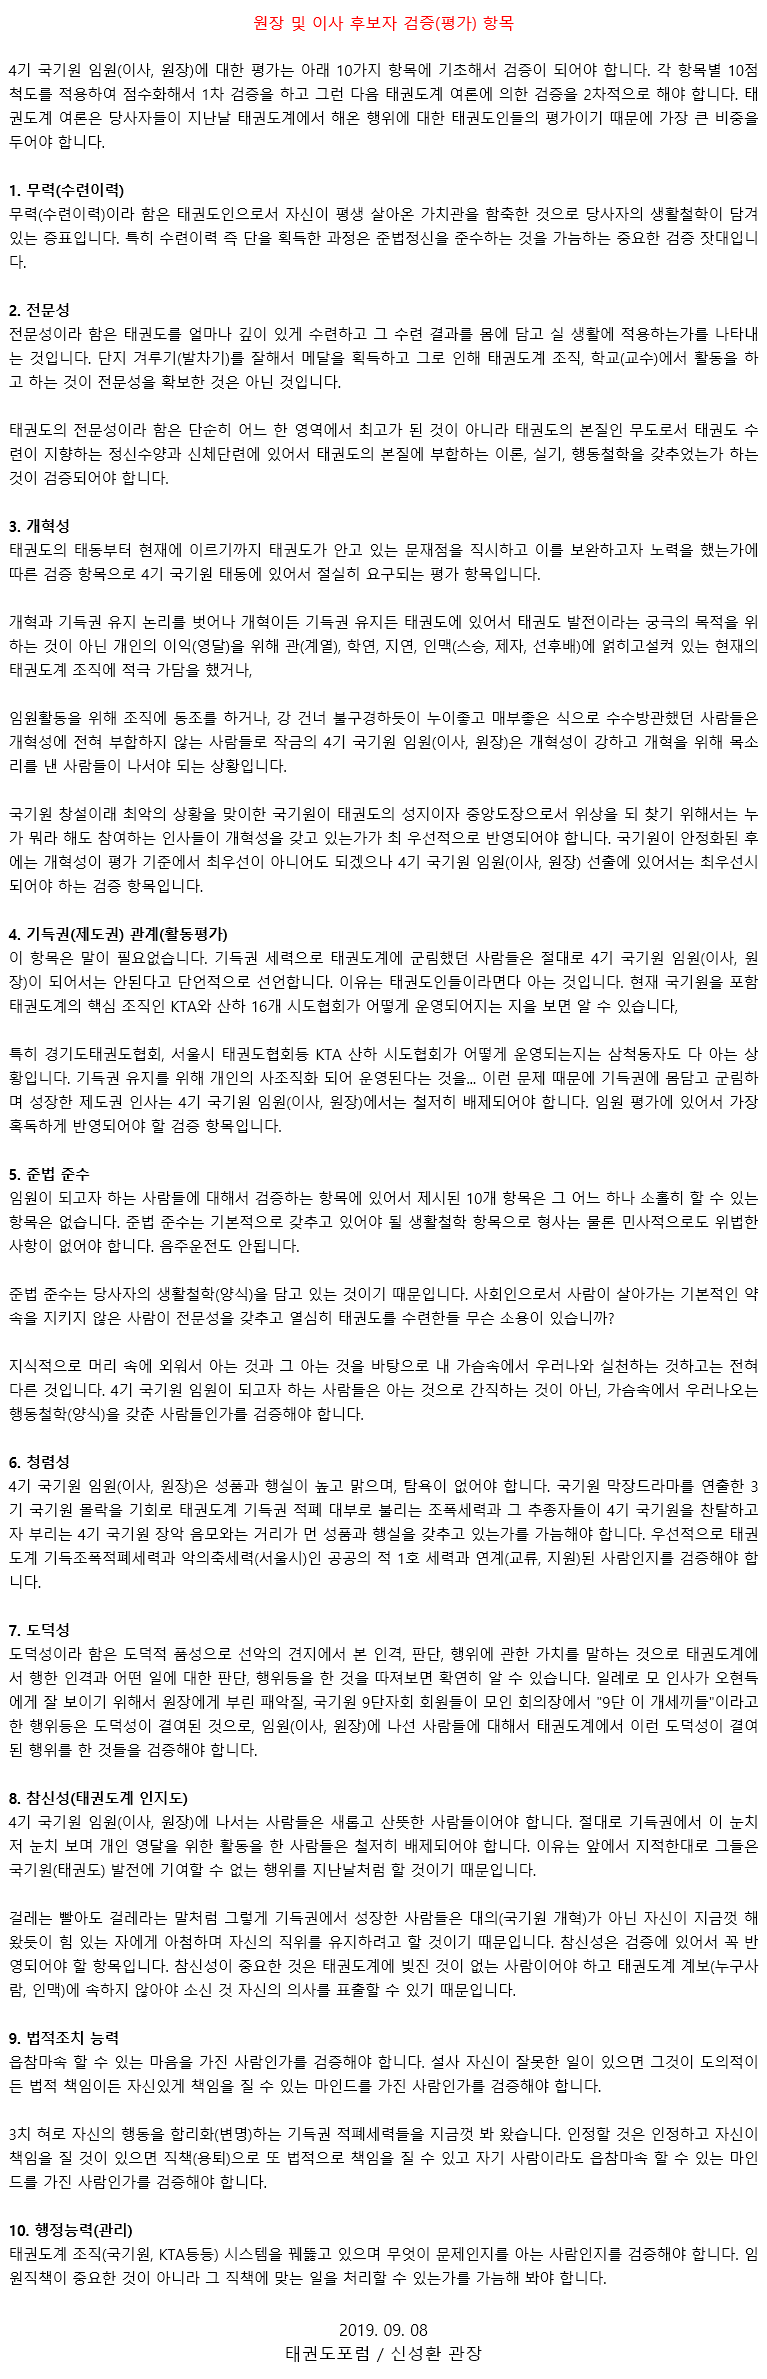 20191008_원장및이사후보자검증(평가)항목.gif